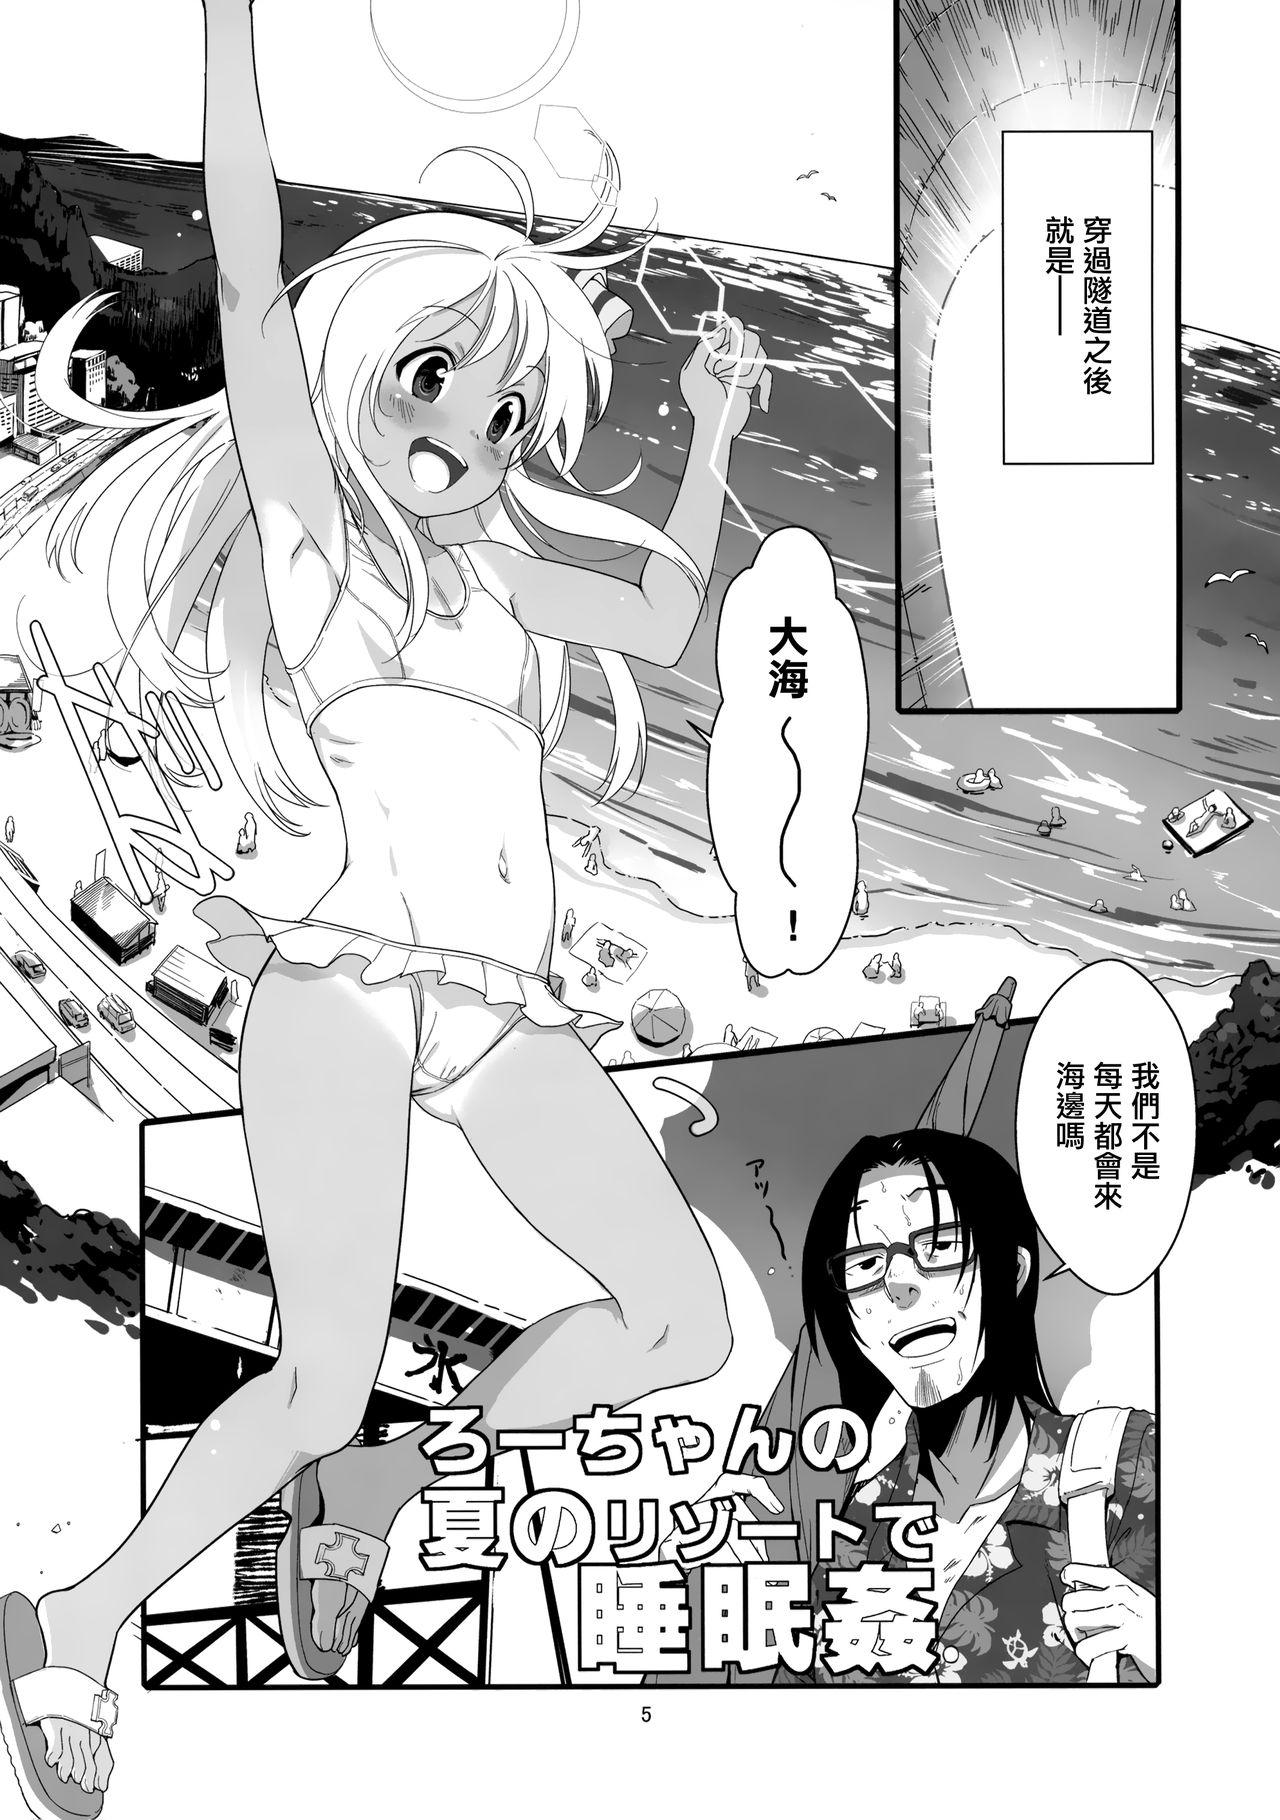 Tgirls Ro-chan no Natsu no Resort de Suiminkan - Kantai collection Porno 18 - Page 5